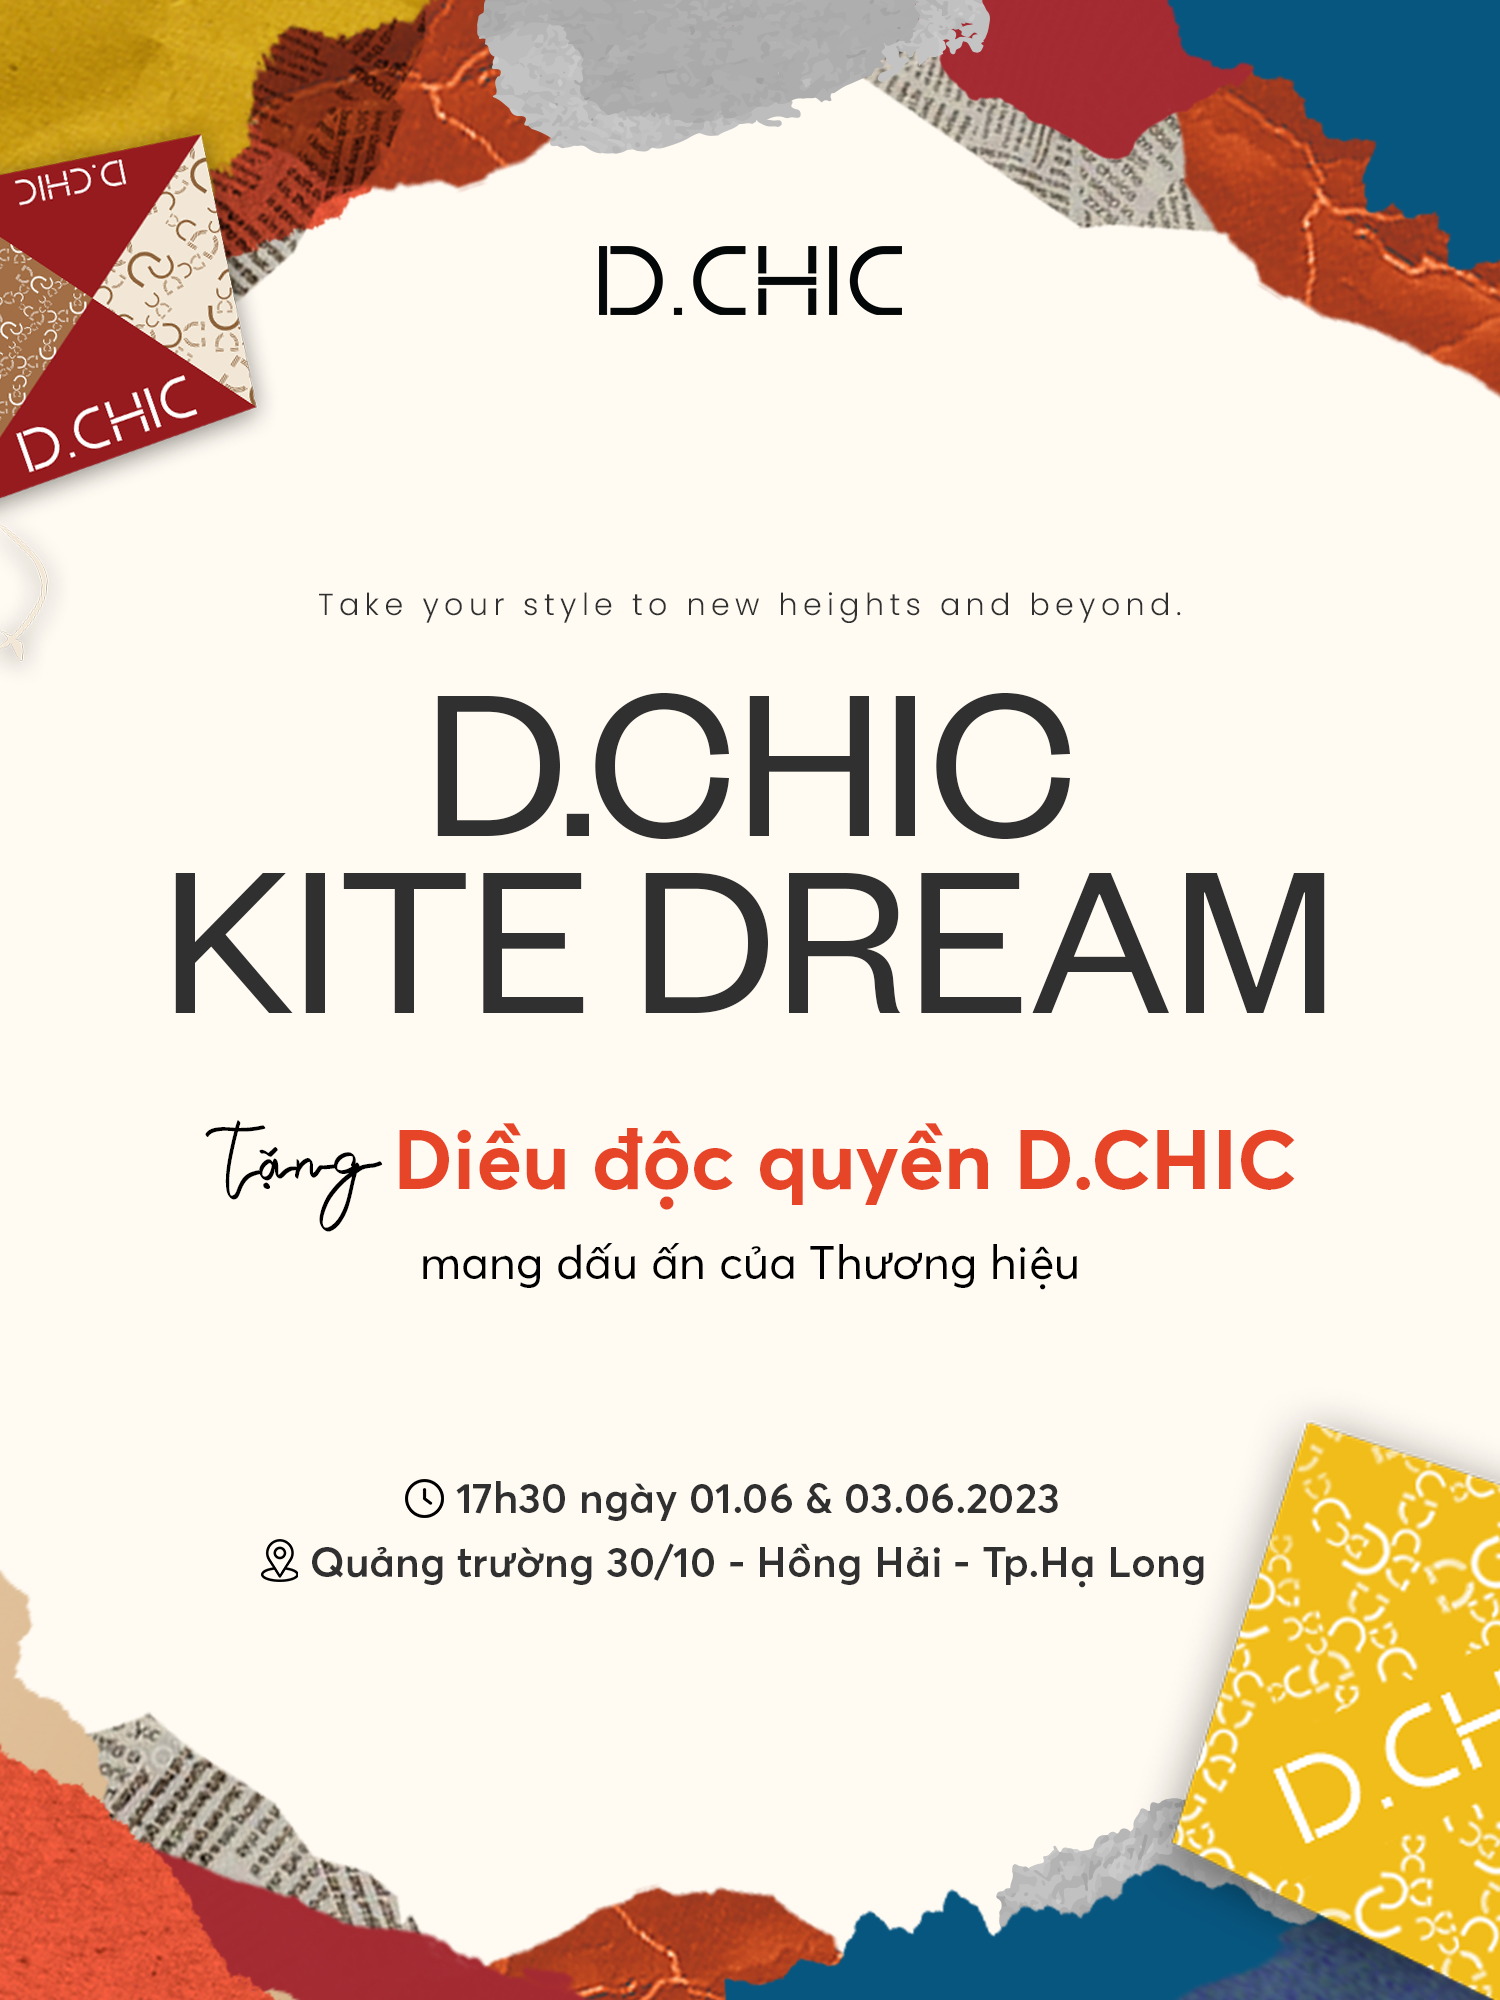 “D.CHIC KITE DREAM - Tặng diều độc quyền D.CHIC mang dấu ấn thương hiệu"